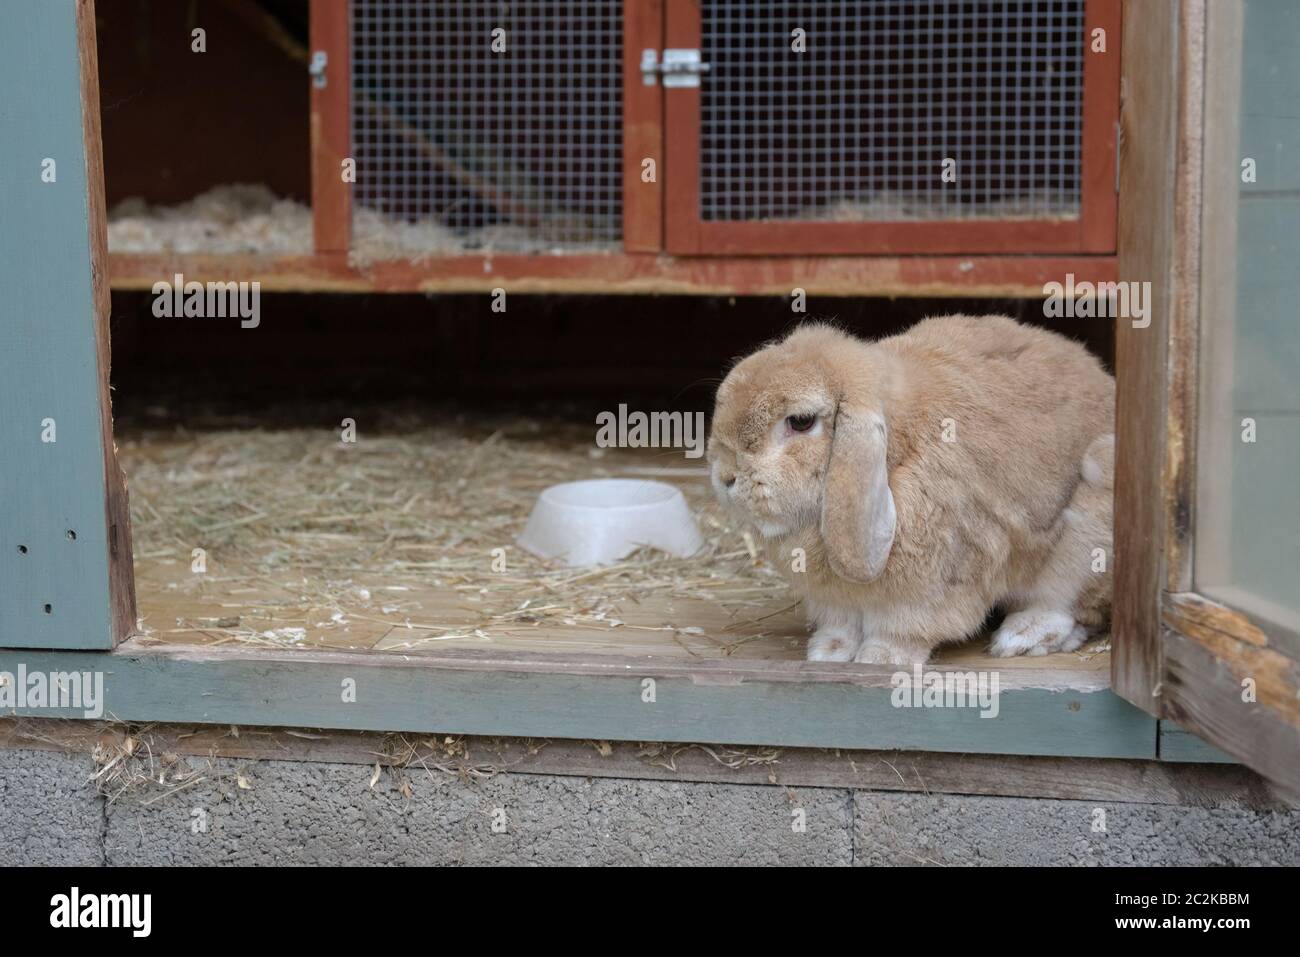 Plus près, petit lapin d'oreille de lop de pays-bas brun clair, beige ou sable nain regarde hors de la huche dans un hangar. Bleu sarcelle et orange. Banque D'Images